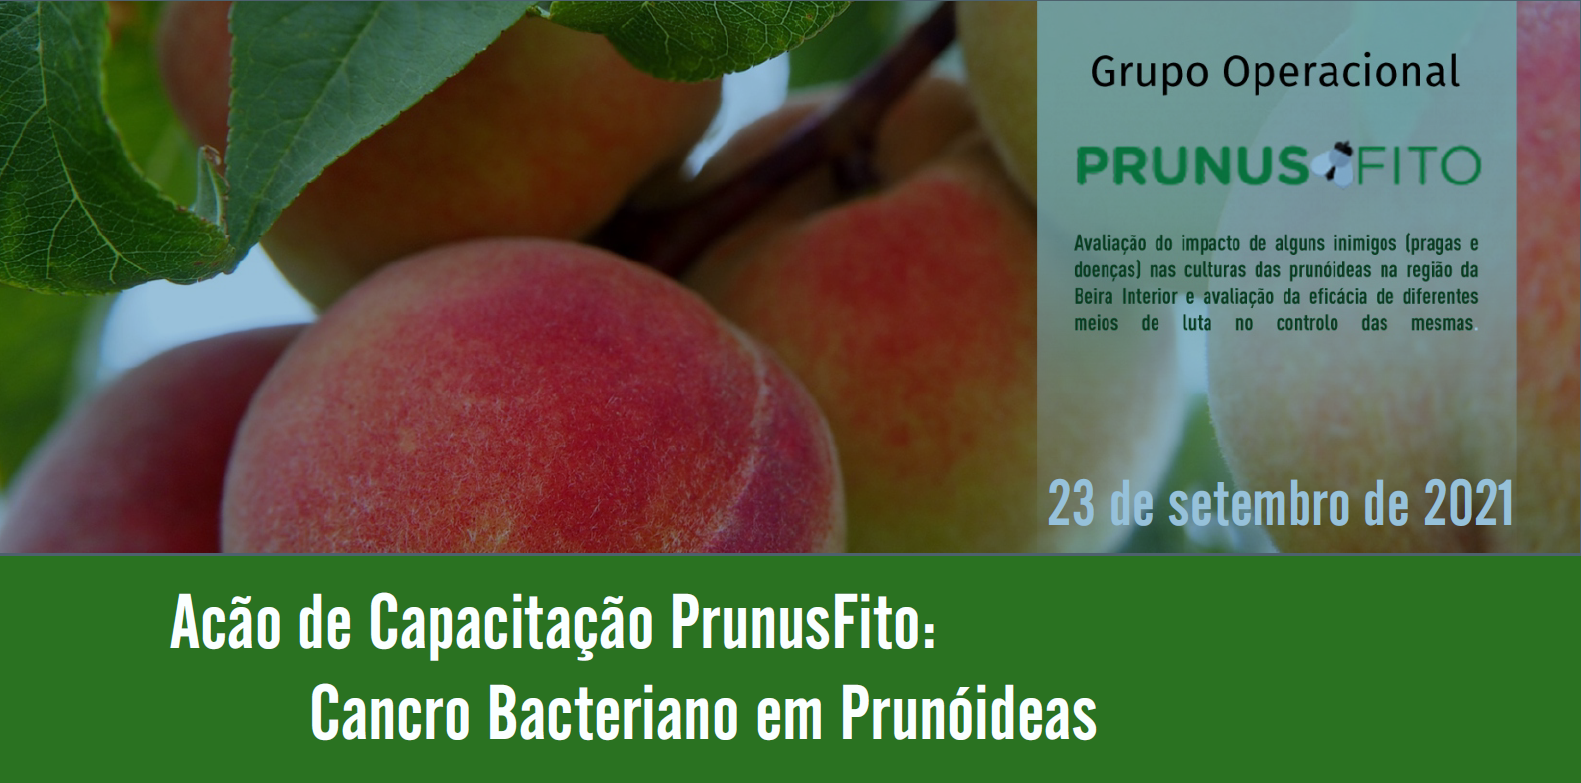 PrunusFito Capacitação